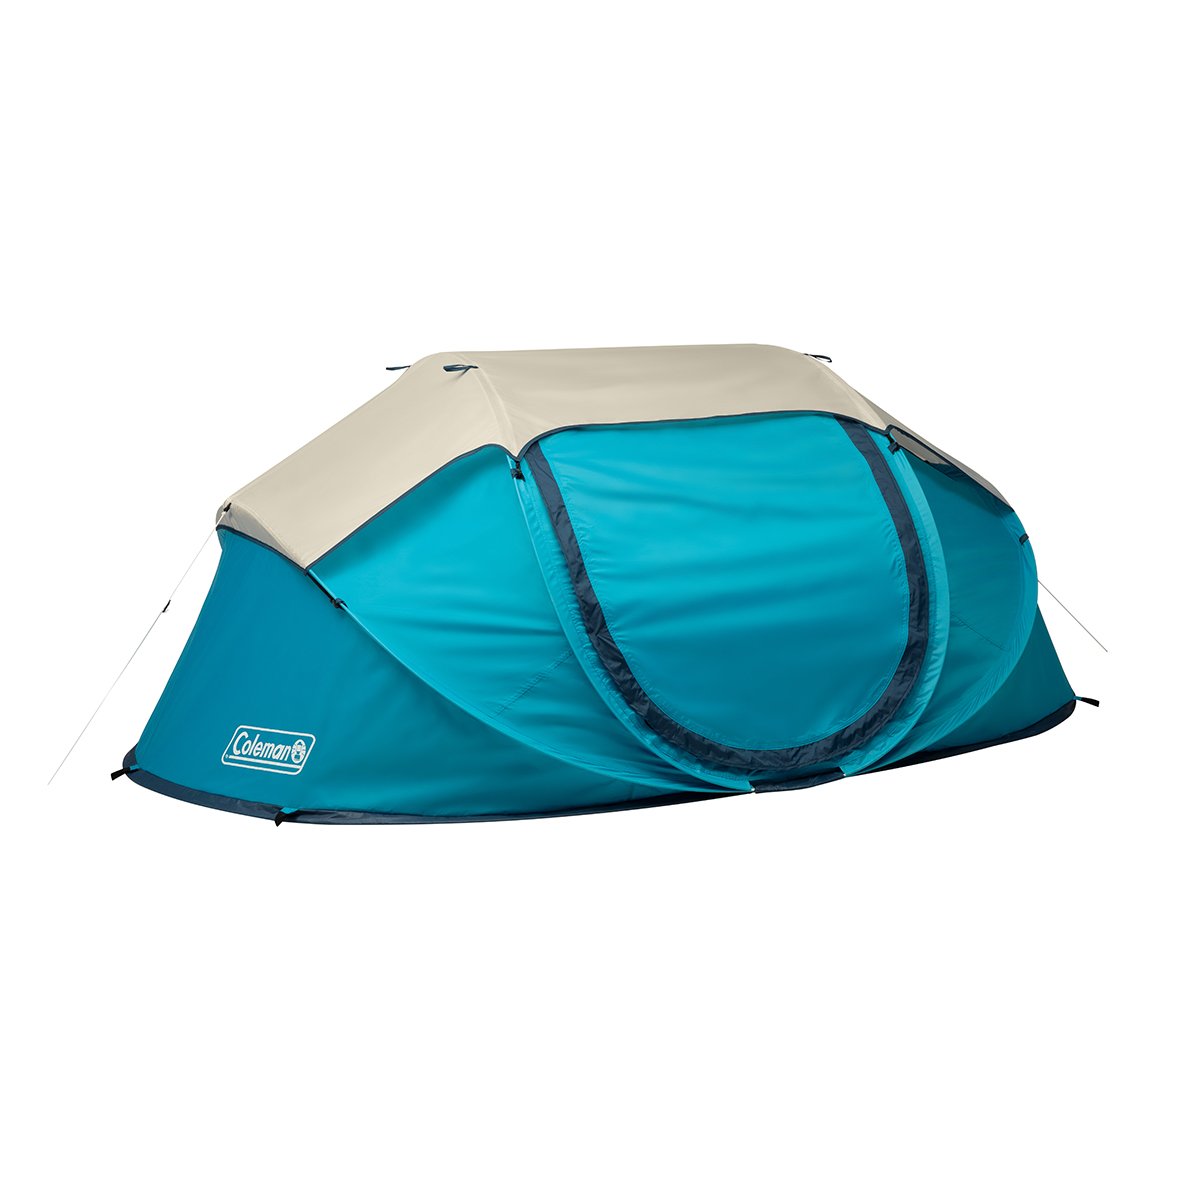 maagpijn Verlenen Kaarsen 4-Person Camp Burst™ Pop-Up Tent | Coleman